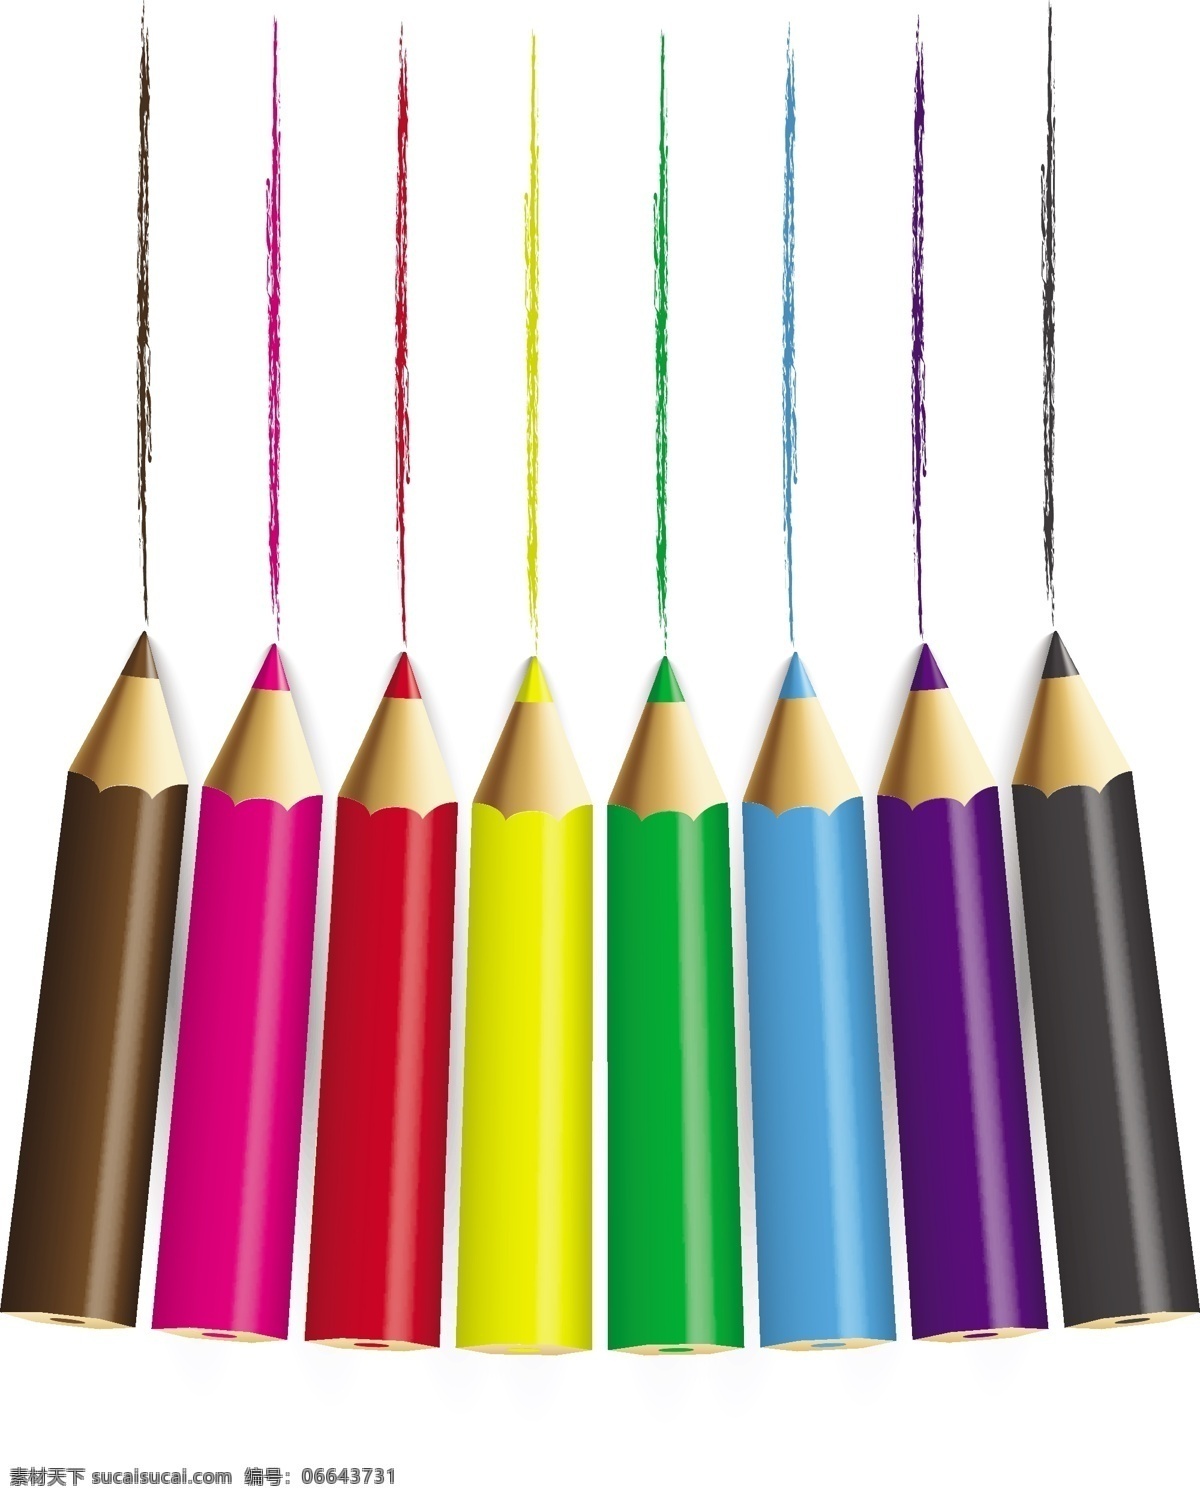 彩色画笔背景 彩色 画笔 铅笔 开学背景 新学期背景 文具 矢量 学习用品 开学素材 生活百科